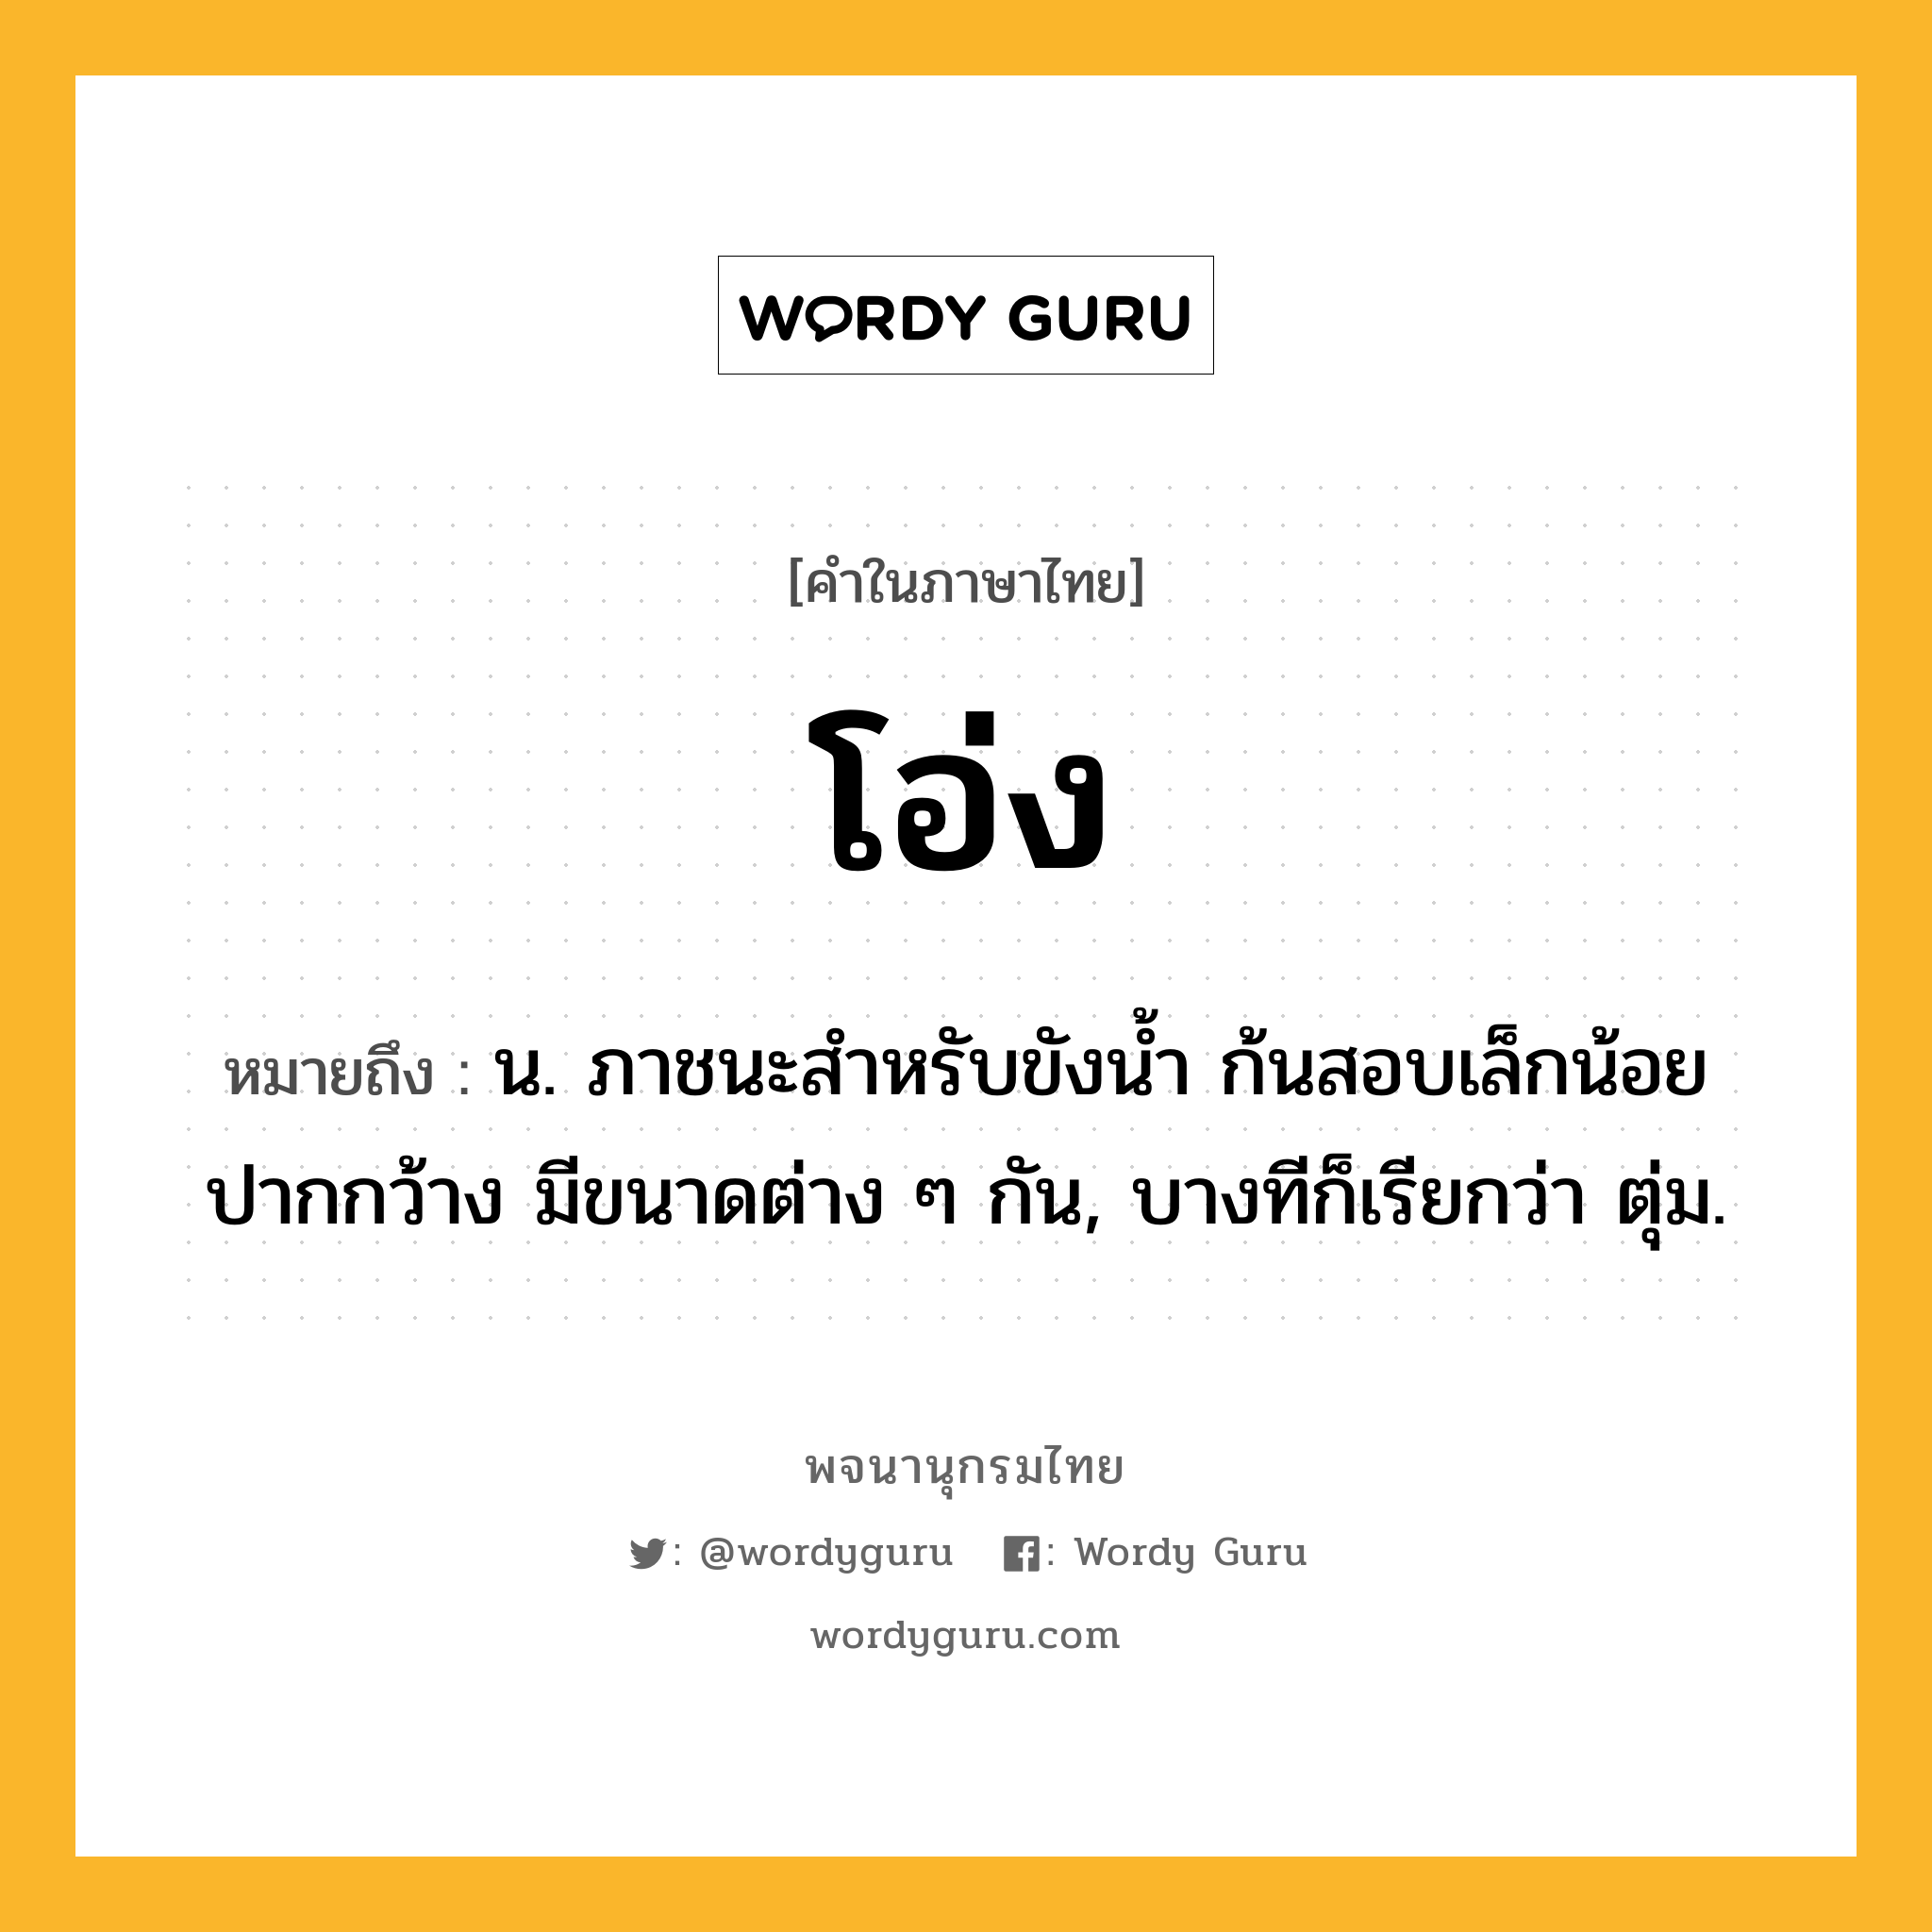 โอ่ง หมายถึงอะไร?, คำในภาษาไทย โอ่ง หมายถึง น. ภาชนะสําหรับขังนํ้า ก้นสอบเล็กน้อย ปากกว้าง มีขนาดต่าง ๆ กัน, บางทีก็เรียกว่า ตุ่ม.